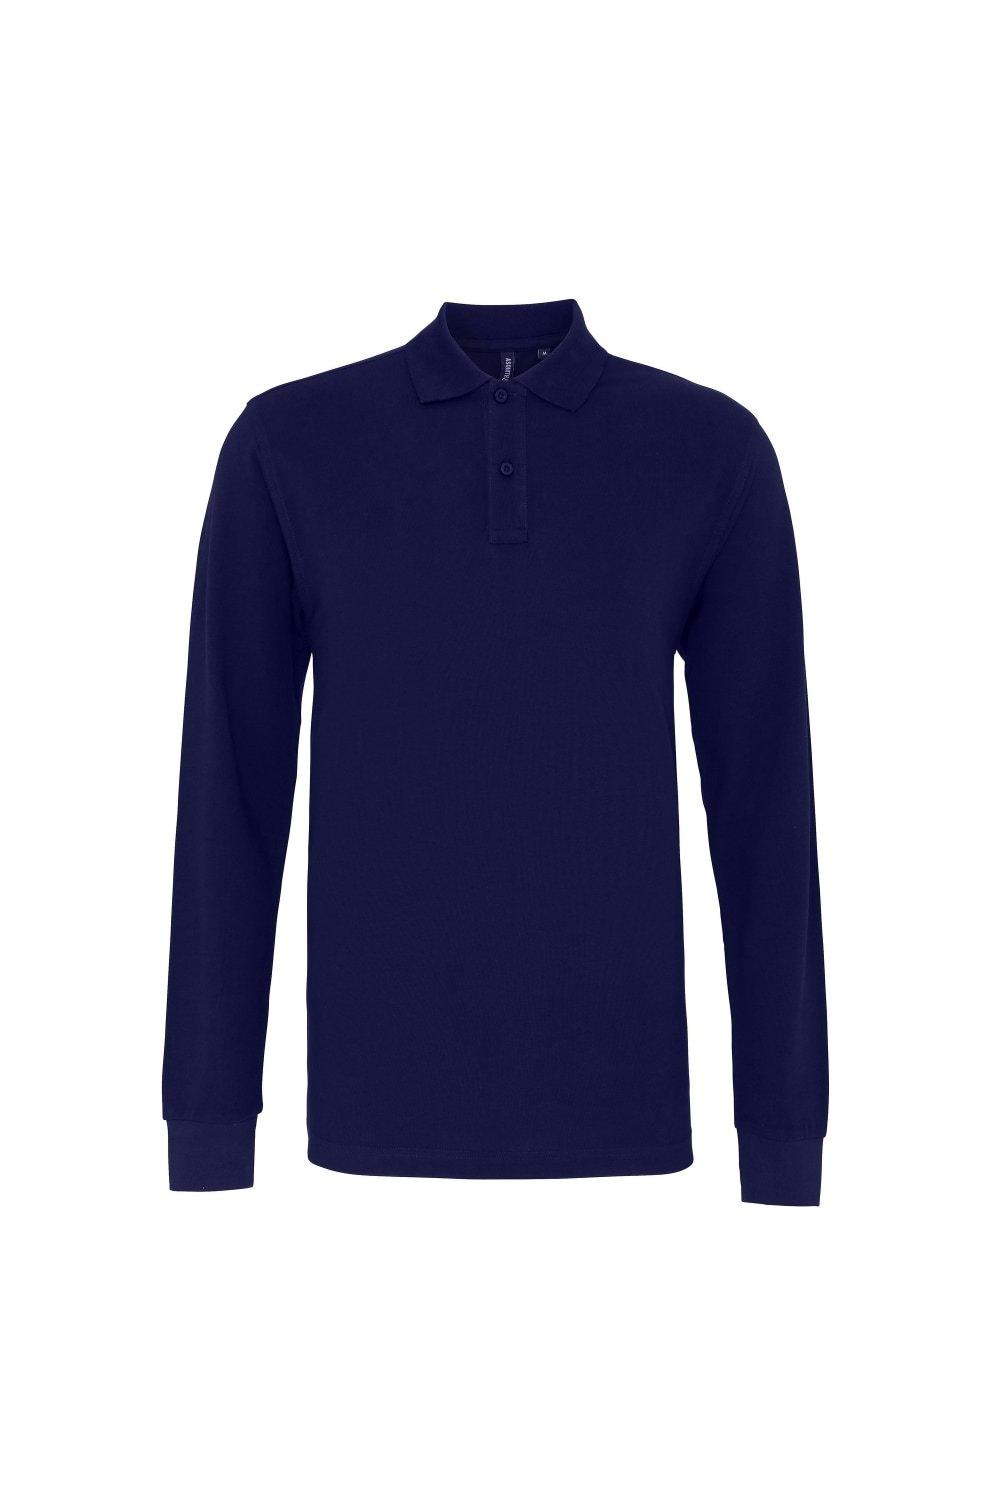 Рубашка поло классического кроя с длинными рукавами Asquith & Fox, темно-синий фото